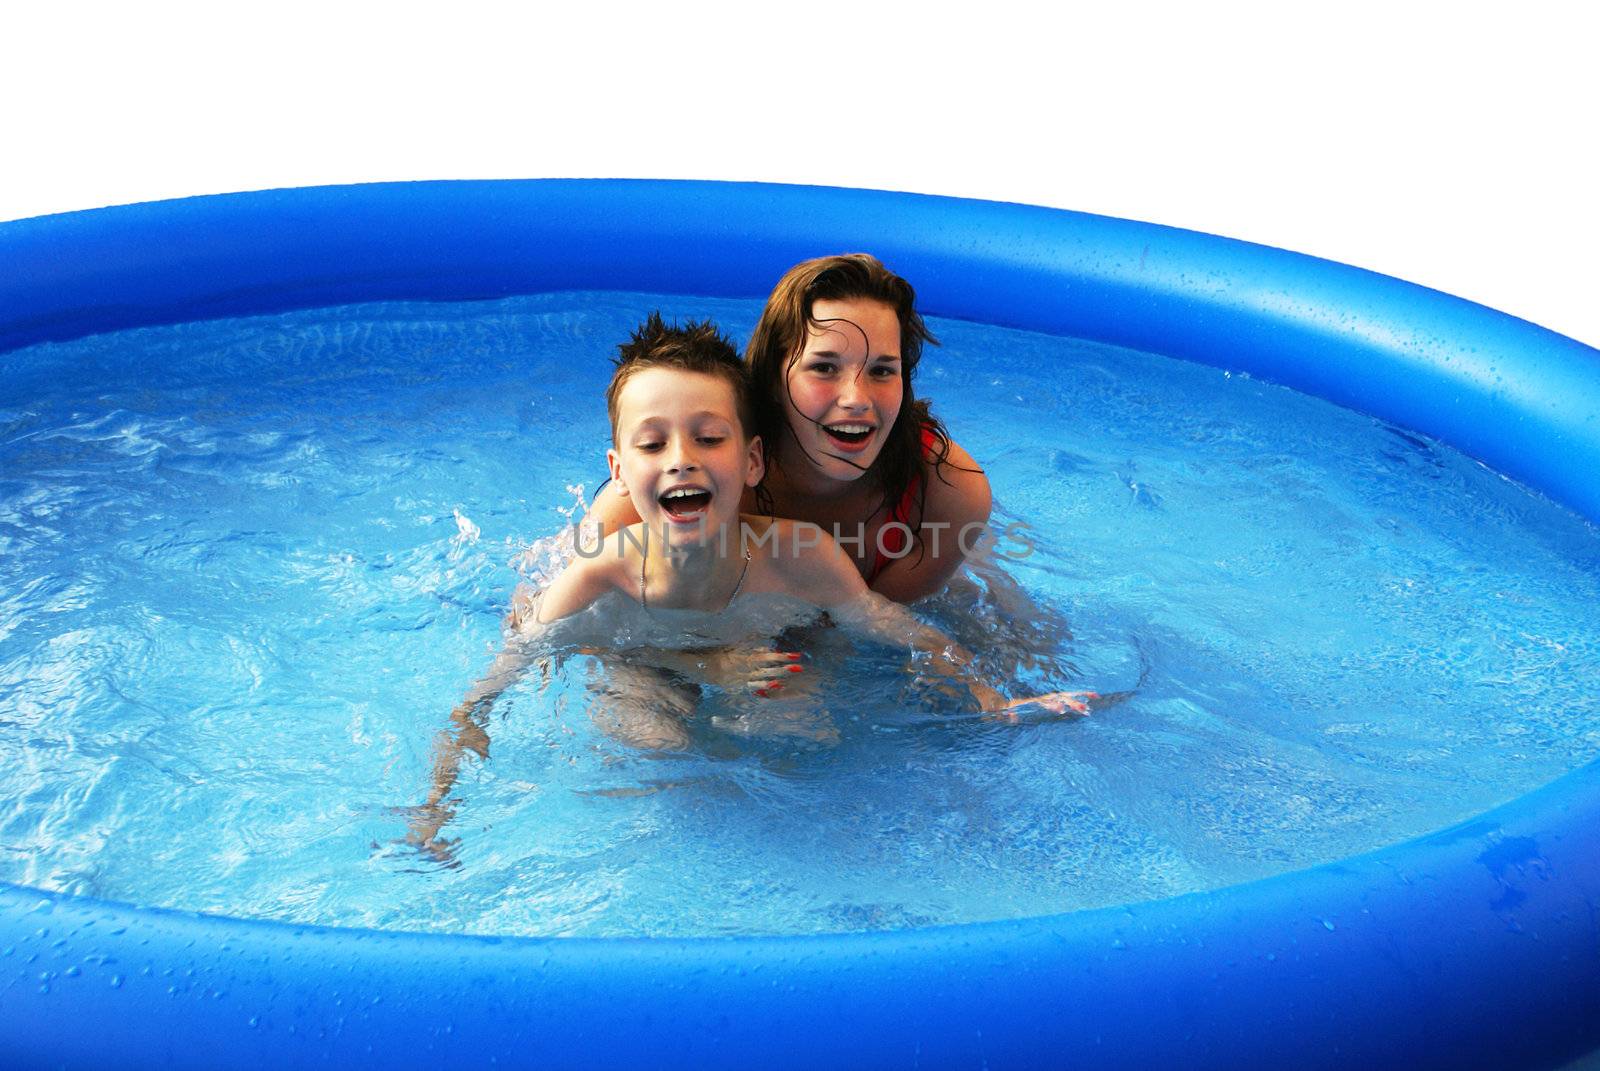 Two kids having fun in a swimming pool.